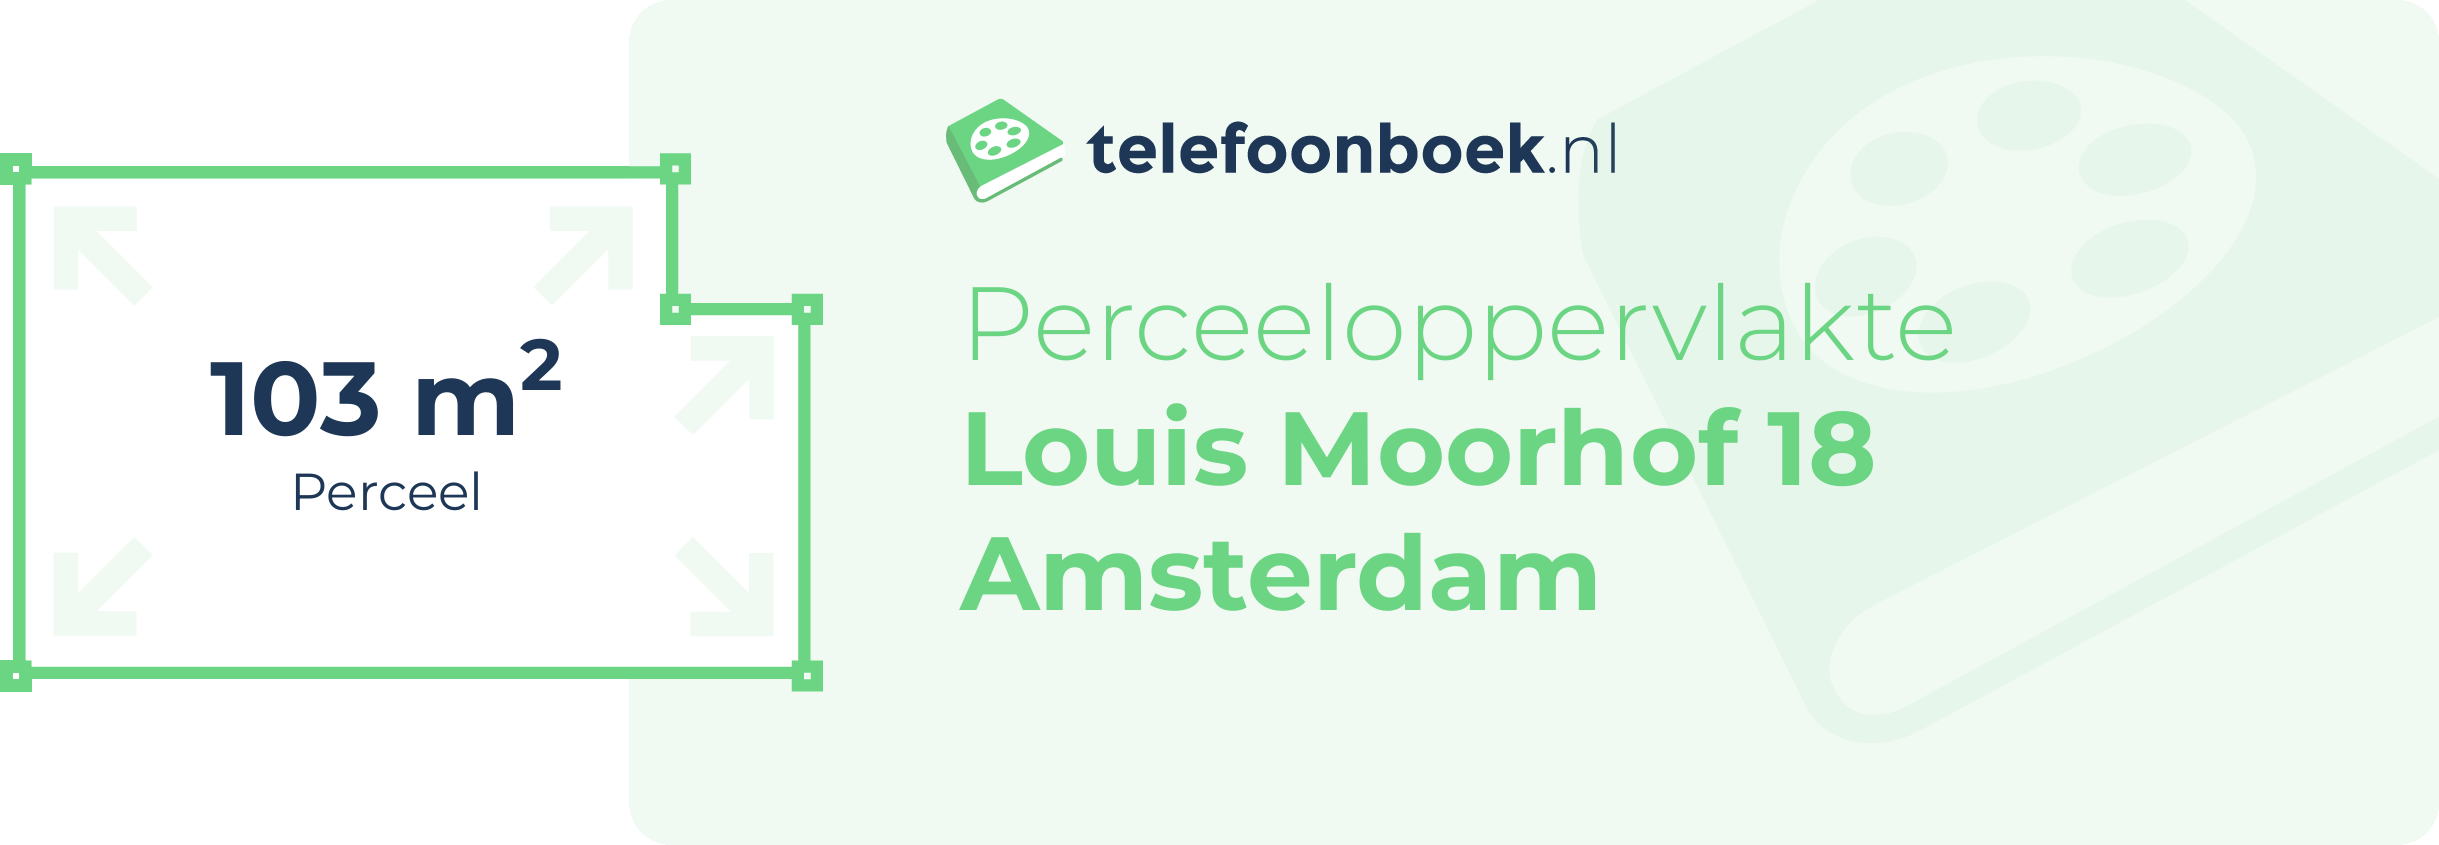 Perceeloppervlakte Louis Moorhof 18 Amsterdam